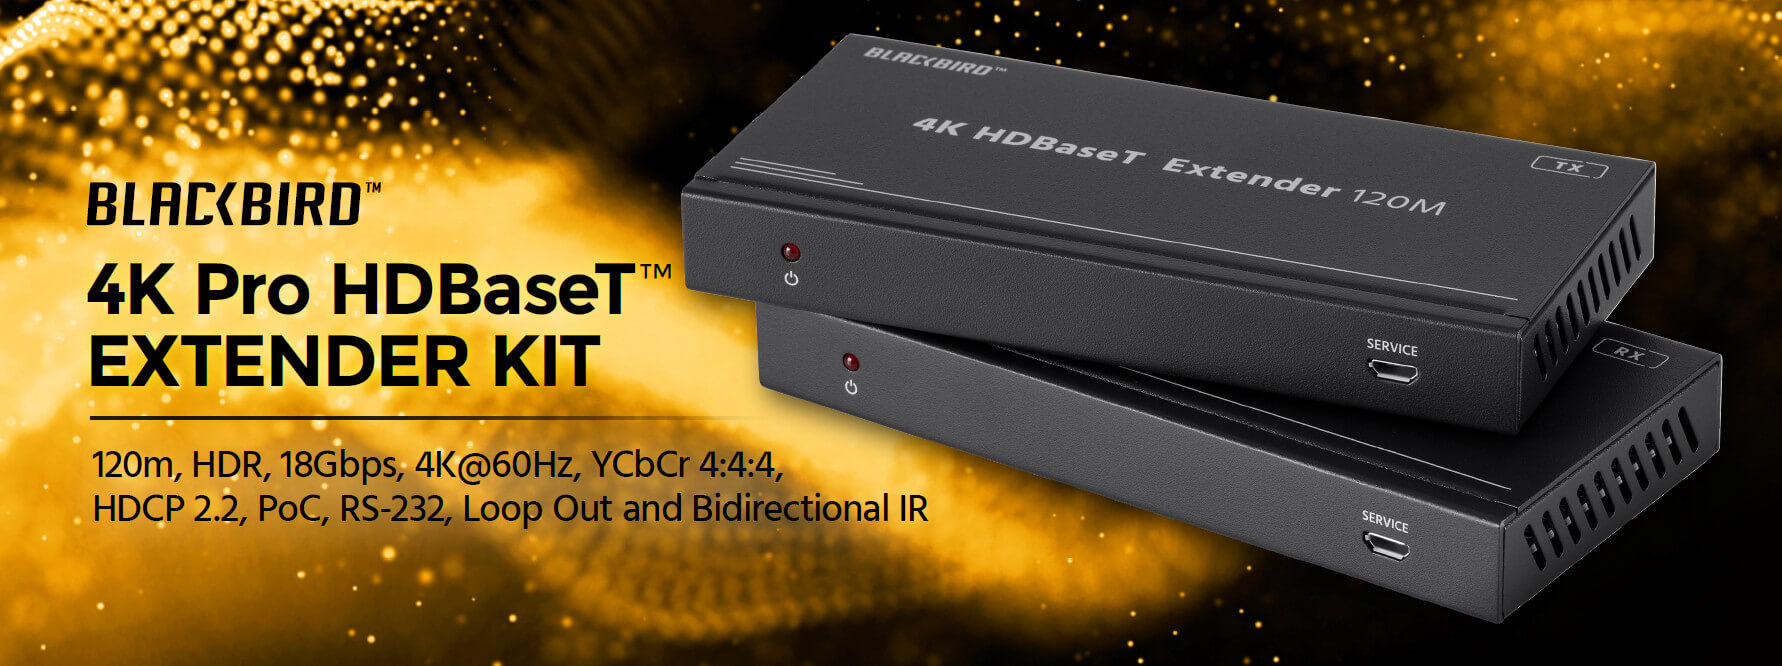 Monoprice Blackbird 4K HDBaseT Extender Kit, 120m, HDR, 18Gbps, 4K